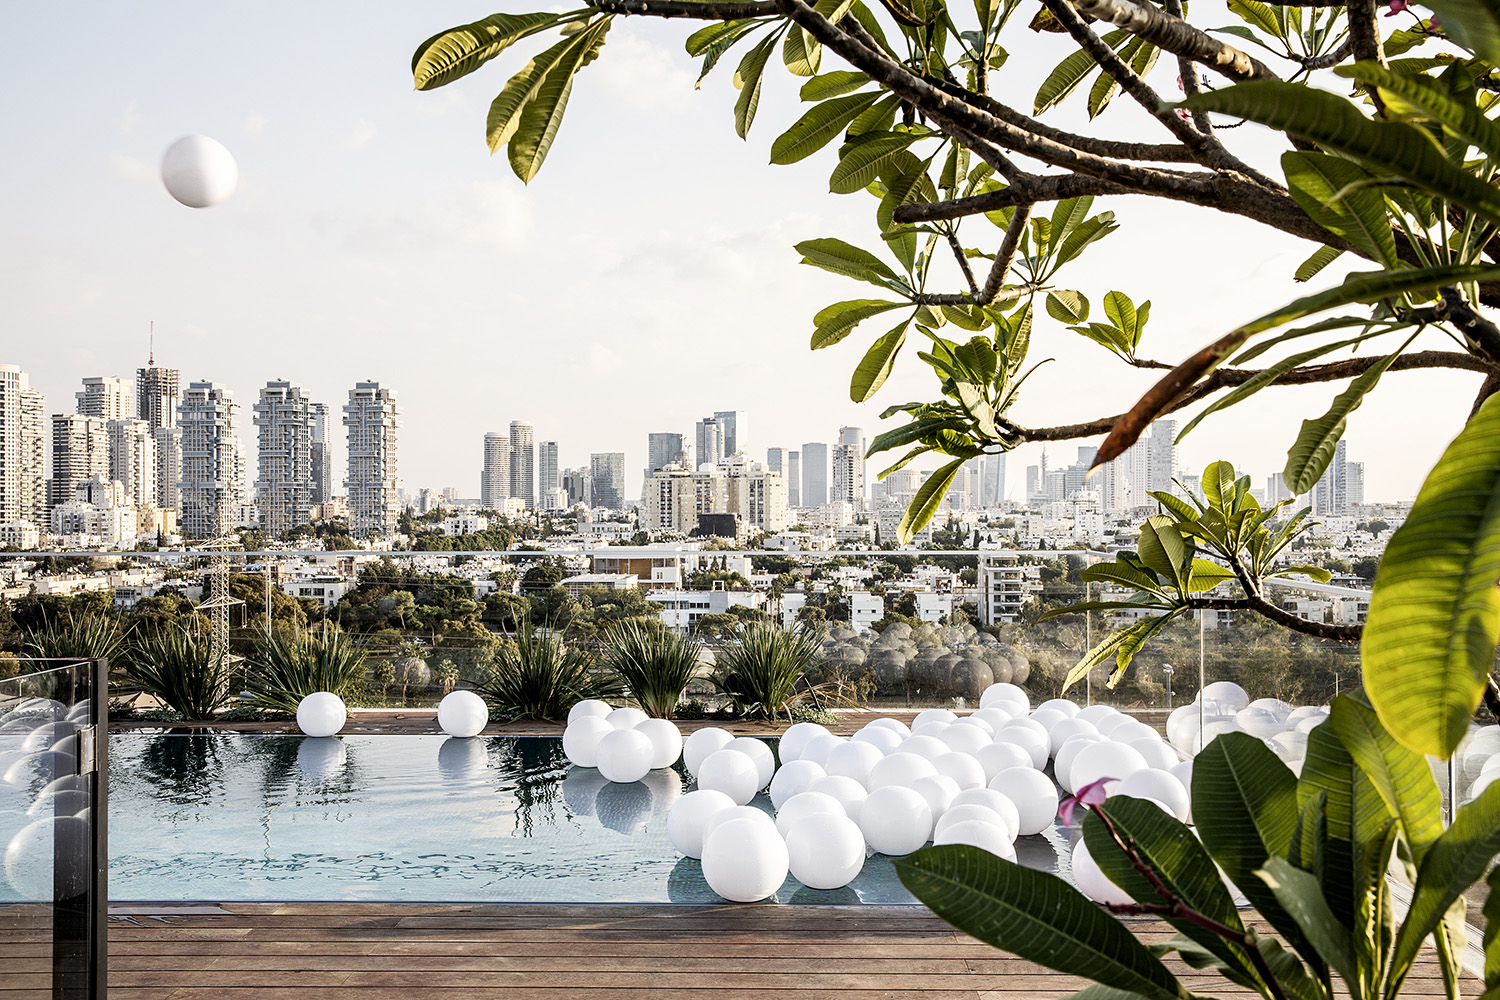 Prémiový přelivný bazén pro střešní terasu v Izraeli | IMAGINOX